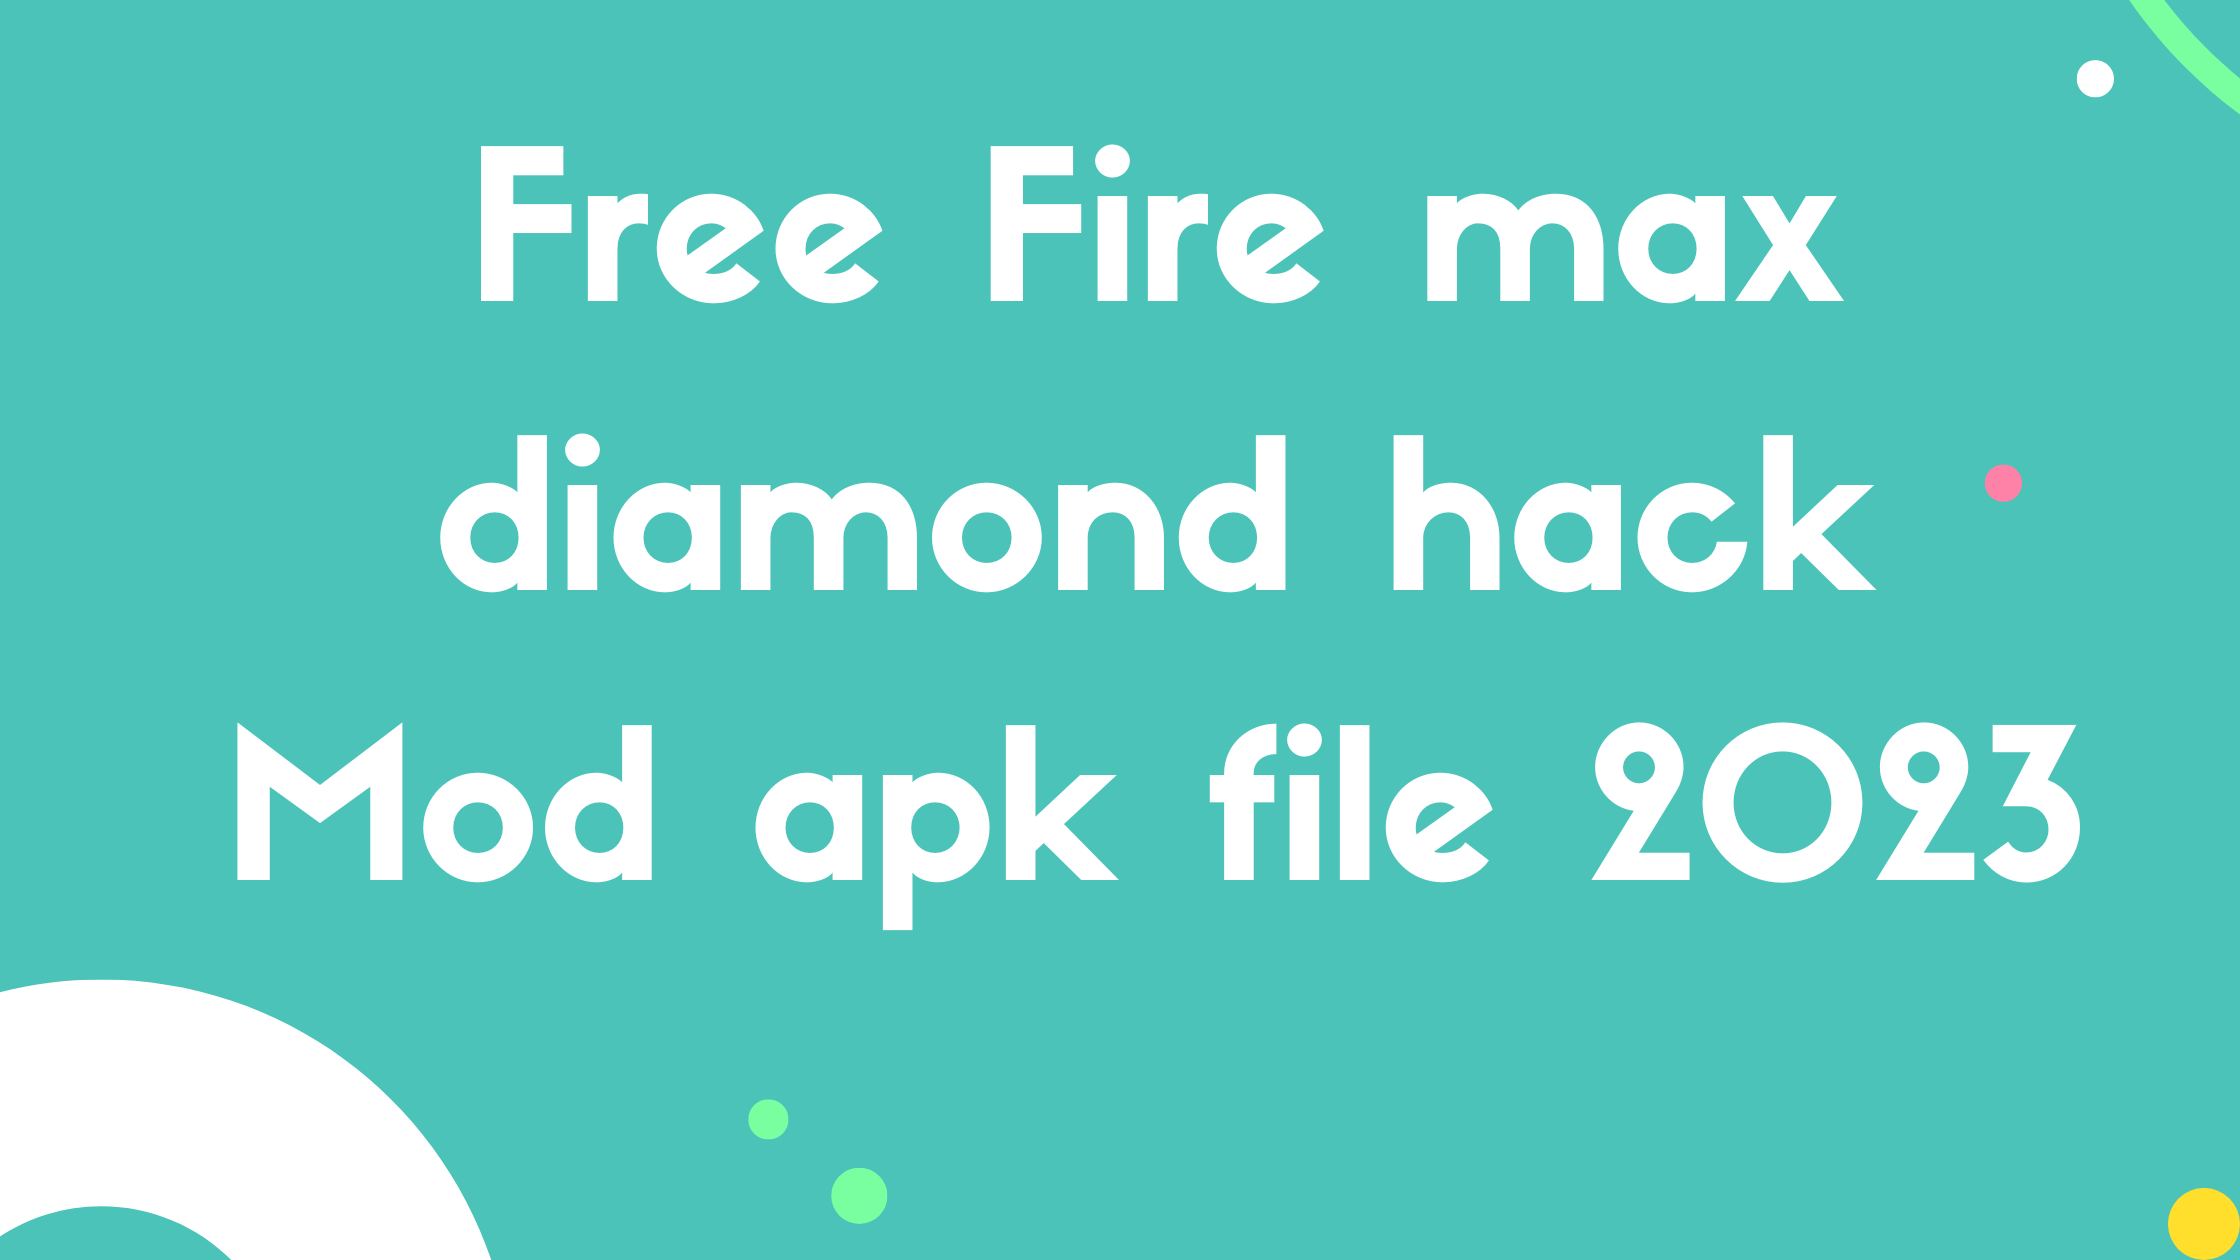 Free Fire max diamond hack Mod apk file 2023